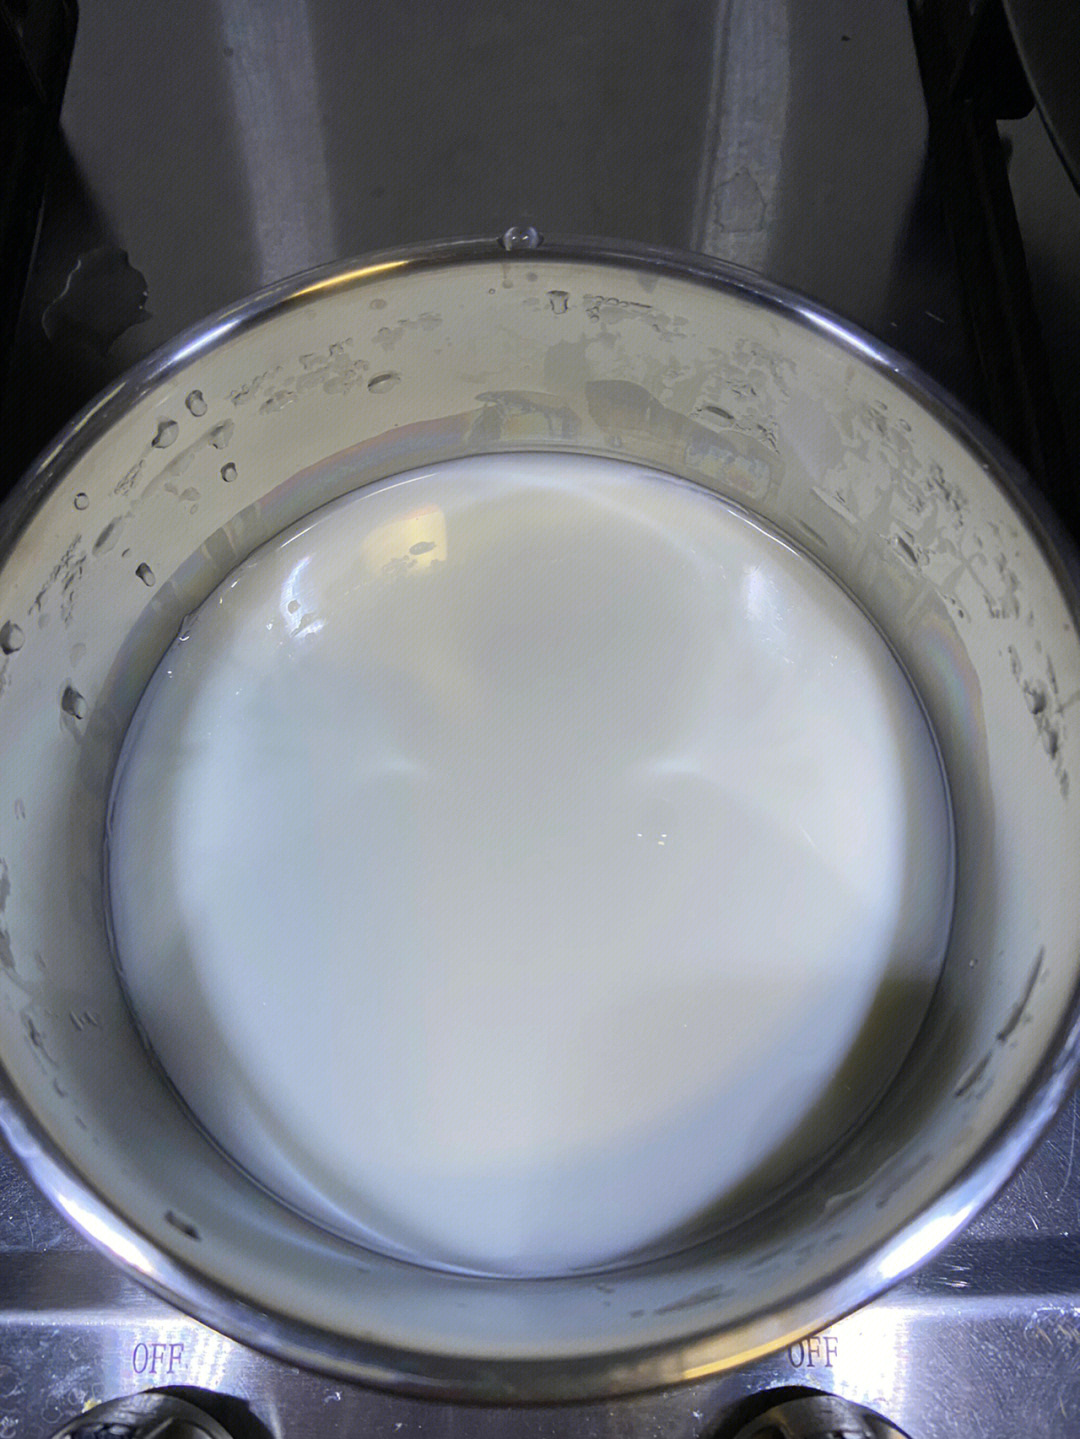 今天菌粉到货,赶紧自制酸奶做起来!因为是一个人的量,材料如下